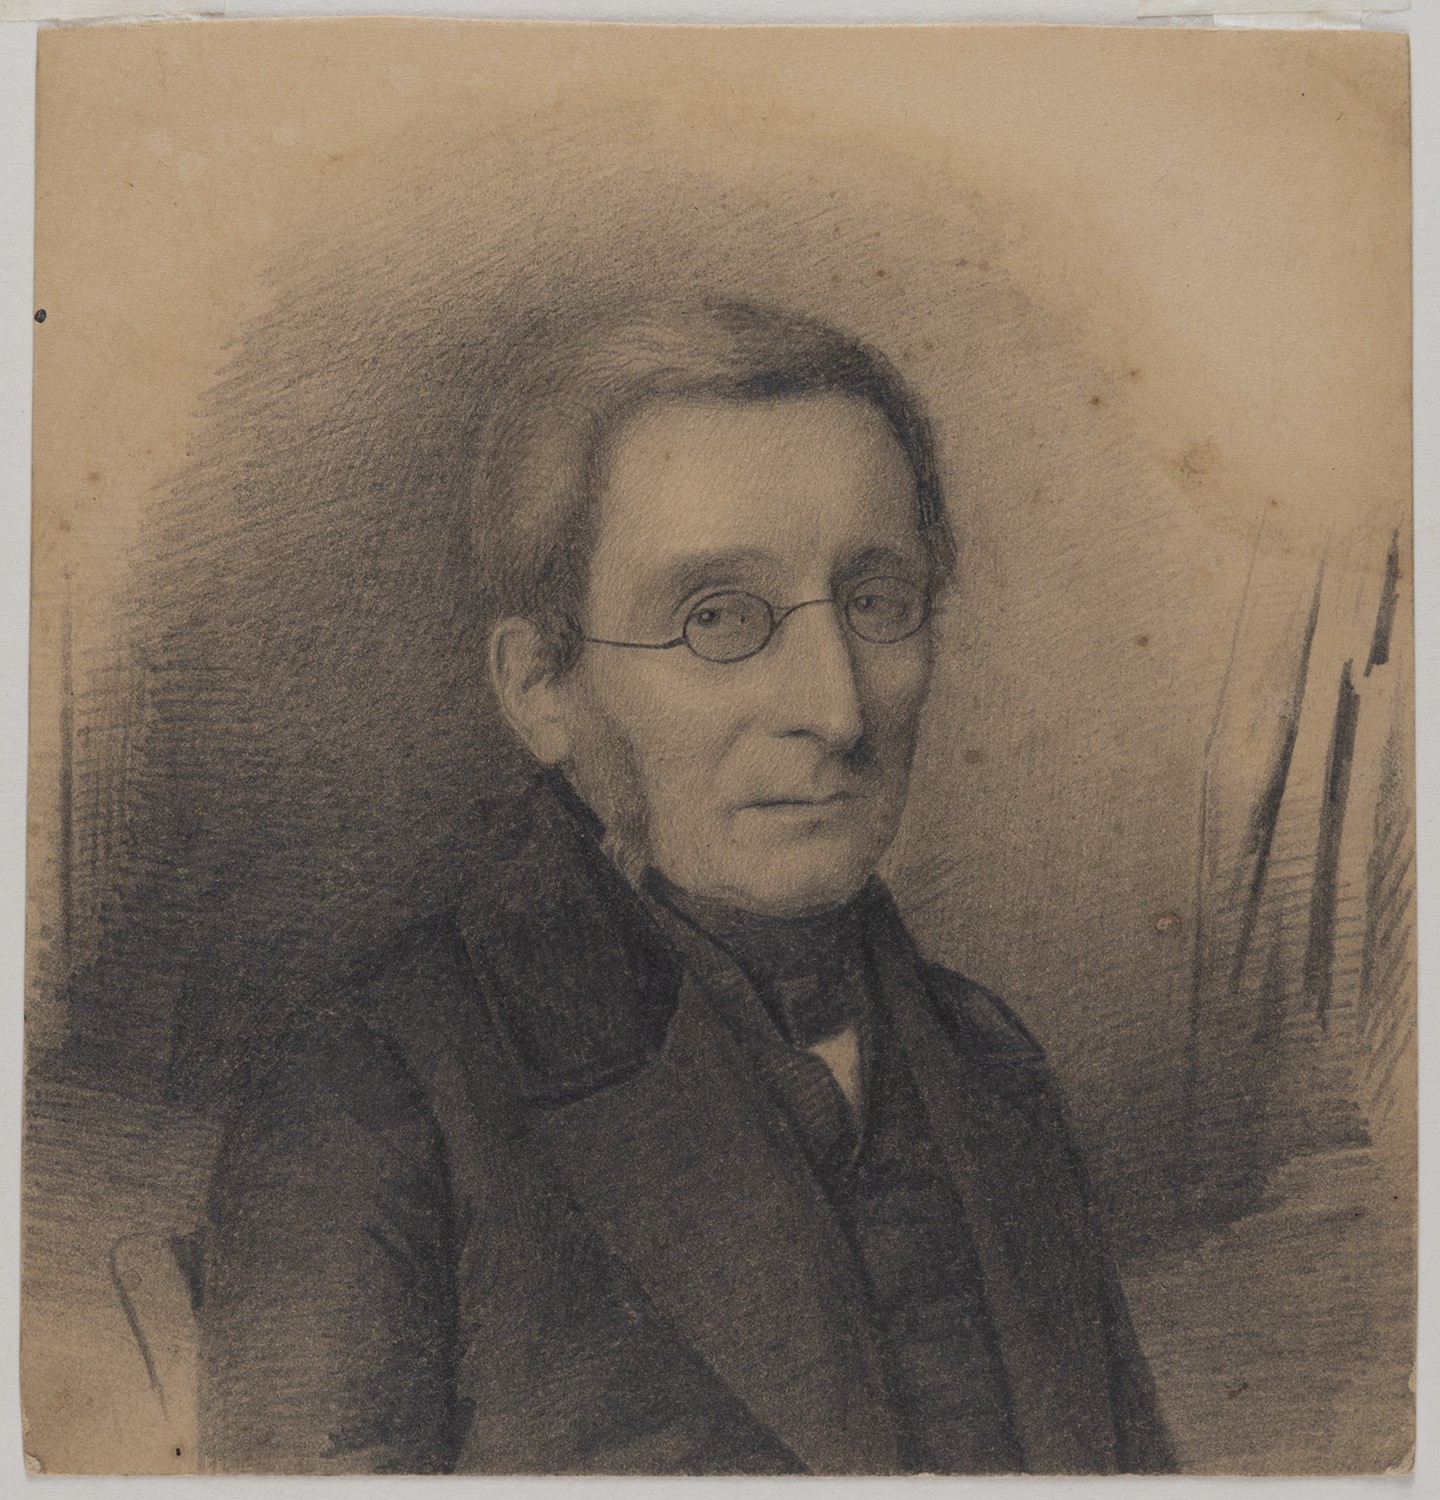 Klöden, Karl Friedrich von (1786-1856), Geograph und Historiker in Berlin (Landesgeschichtliche Vereinigung für die Mark Brandenburg e.V., Archiv CC BY)